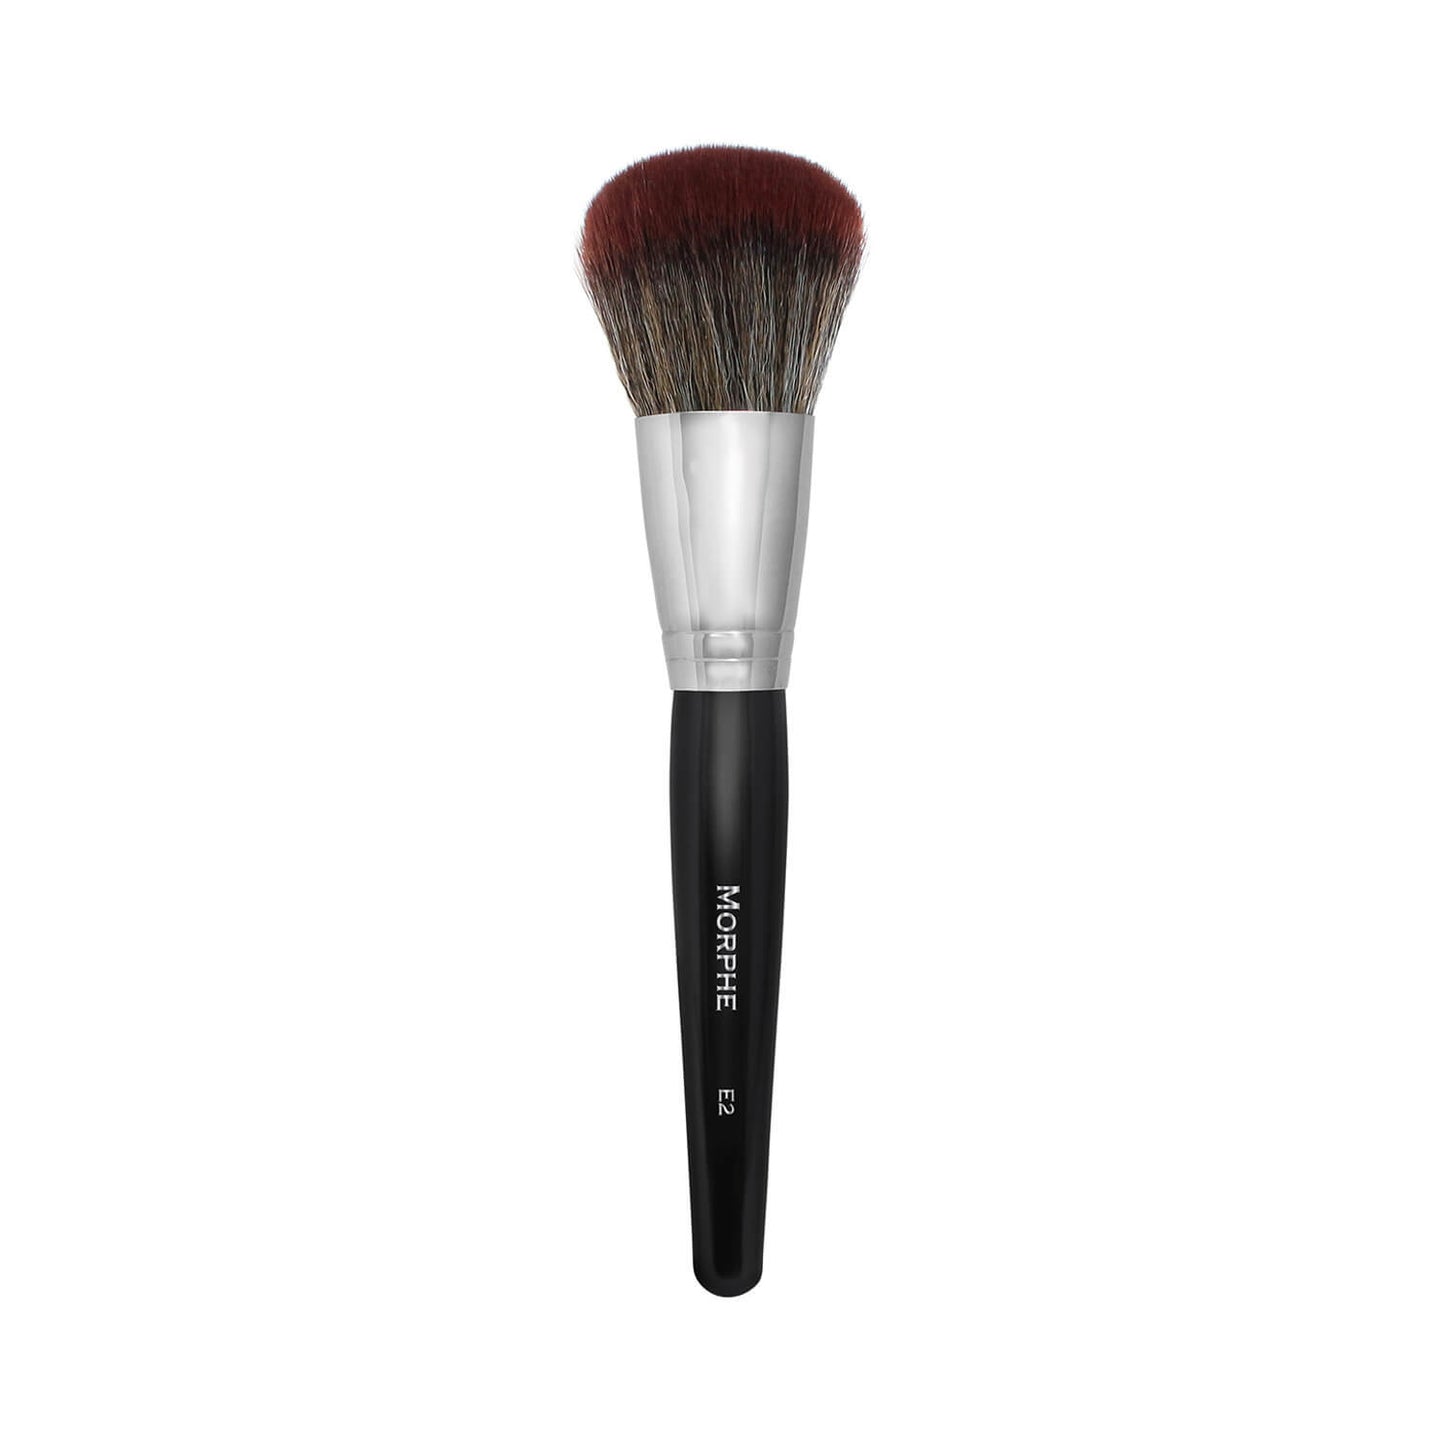 Morphe Cosmetics E2 Round Powder Brush